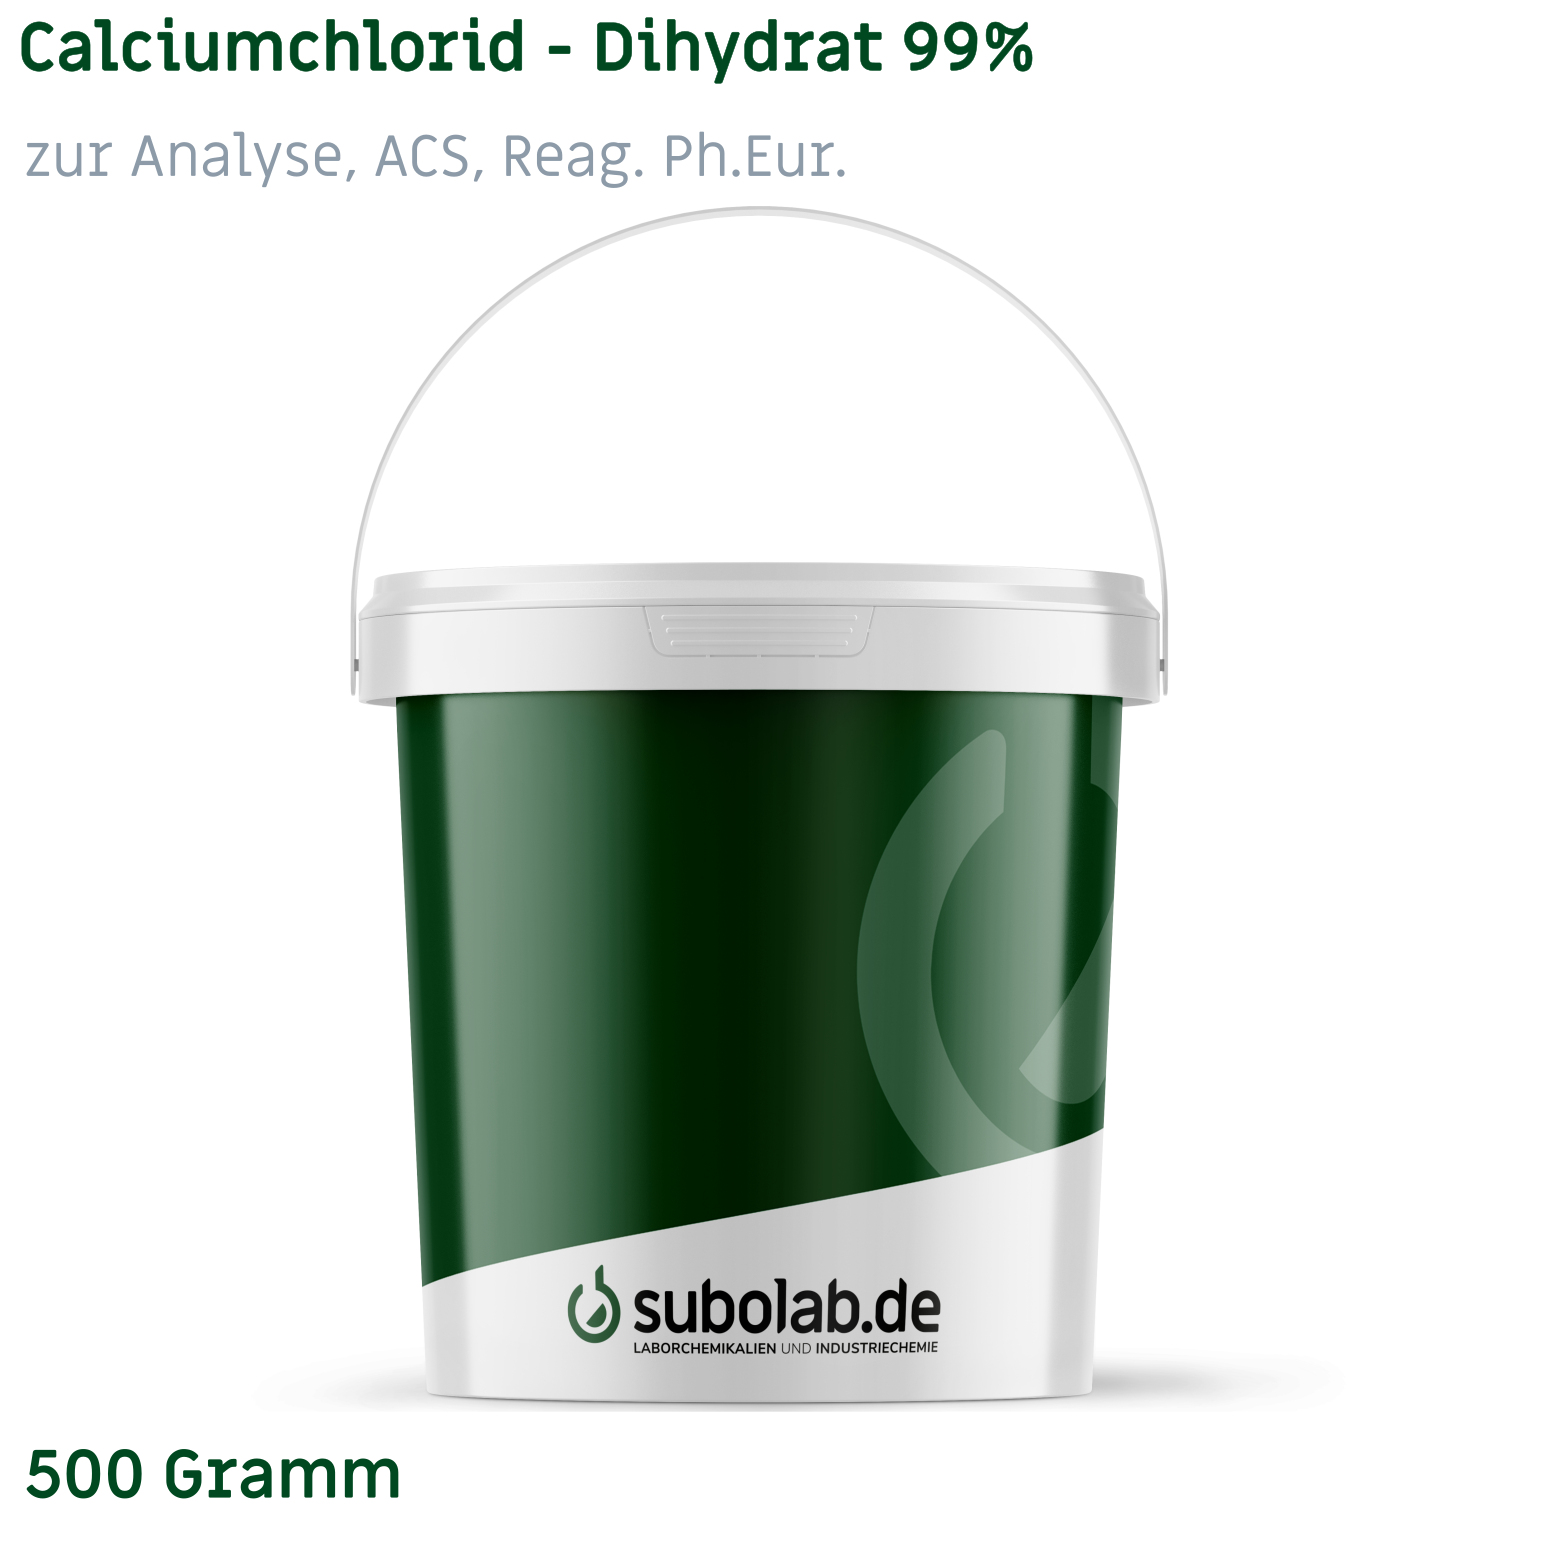 Bild von Calciumchlorid - Dihydrat 99% zur Analyse, ACS, Reag. Ph.Eur. (500 Gramm)